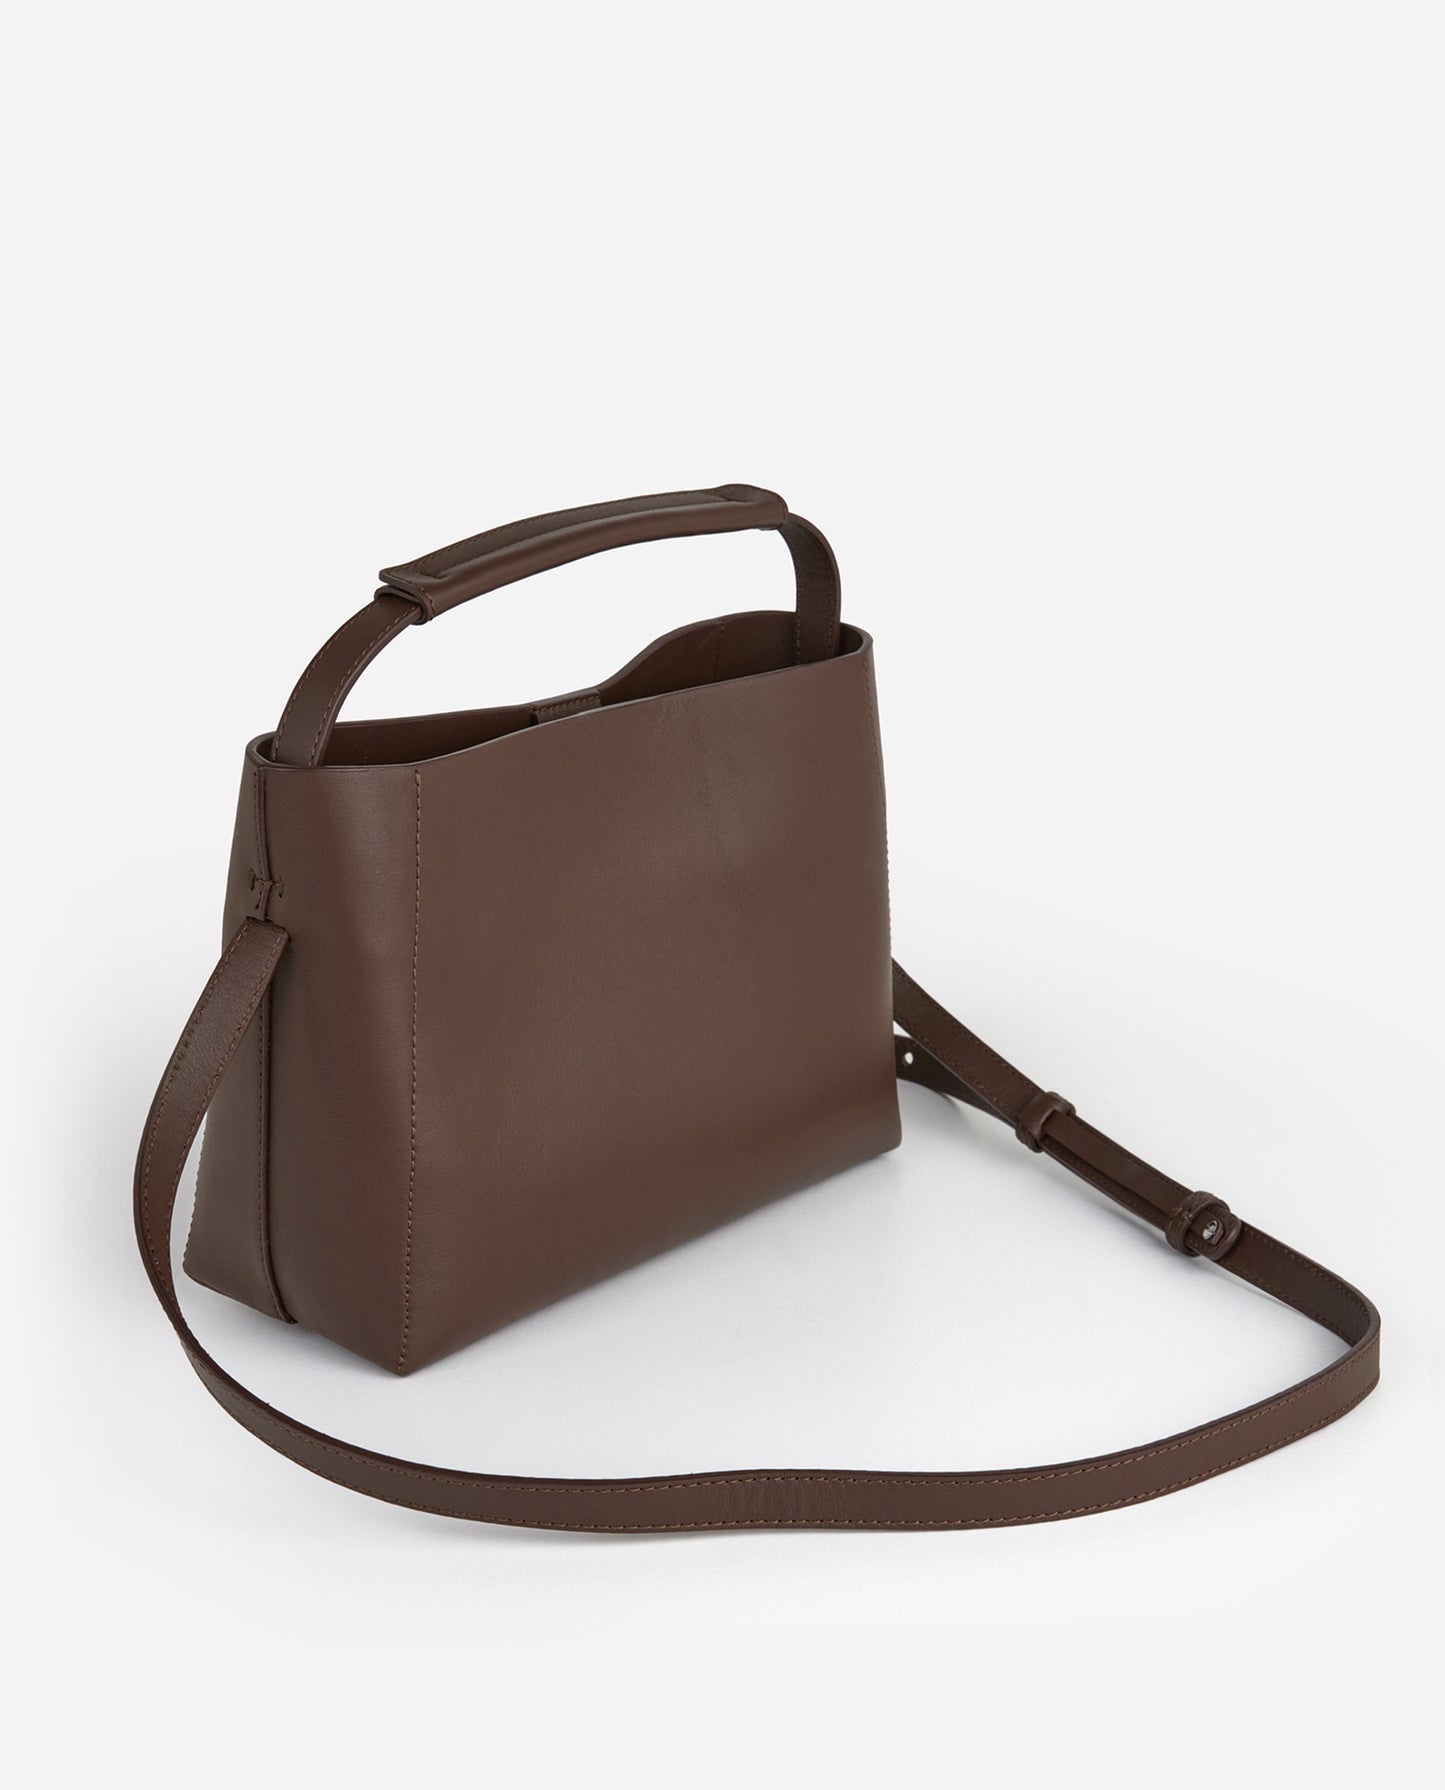 Hedda Grande Handbag Brown Leather